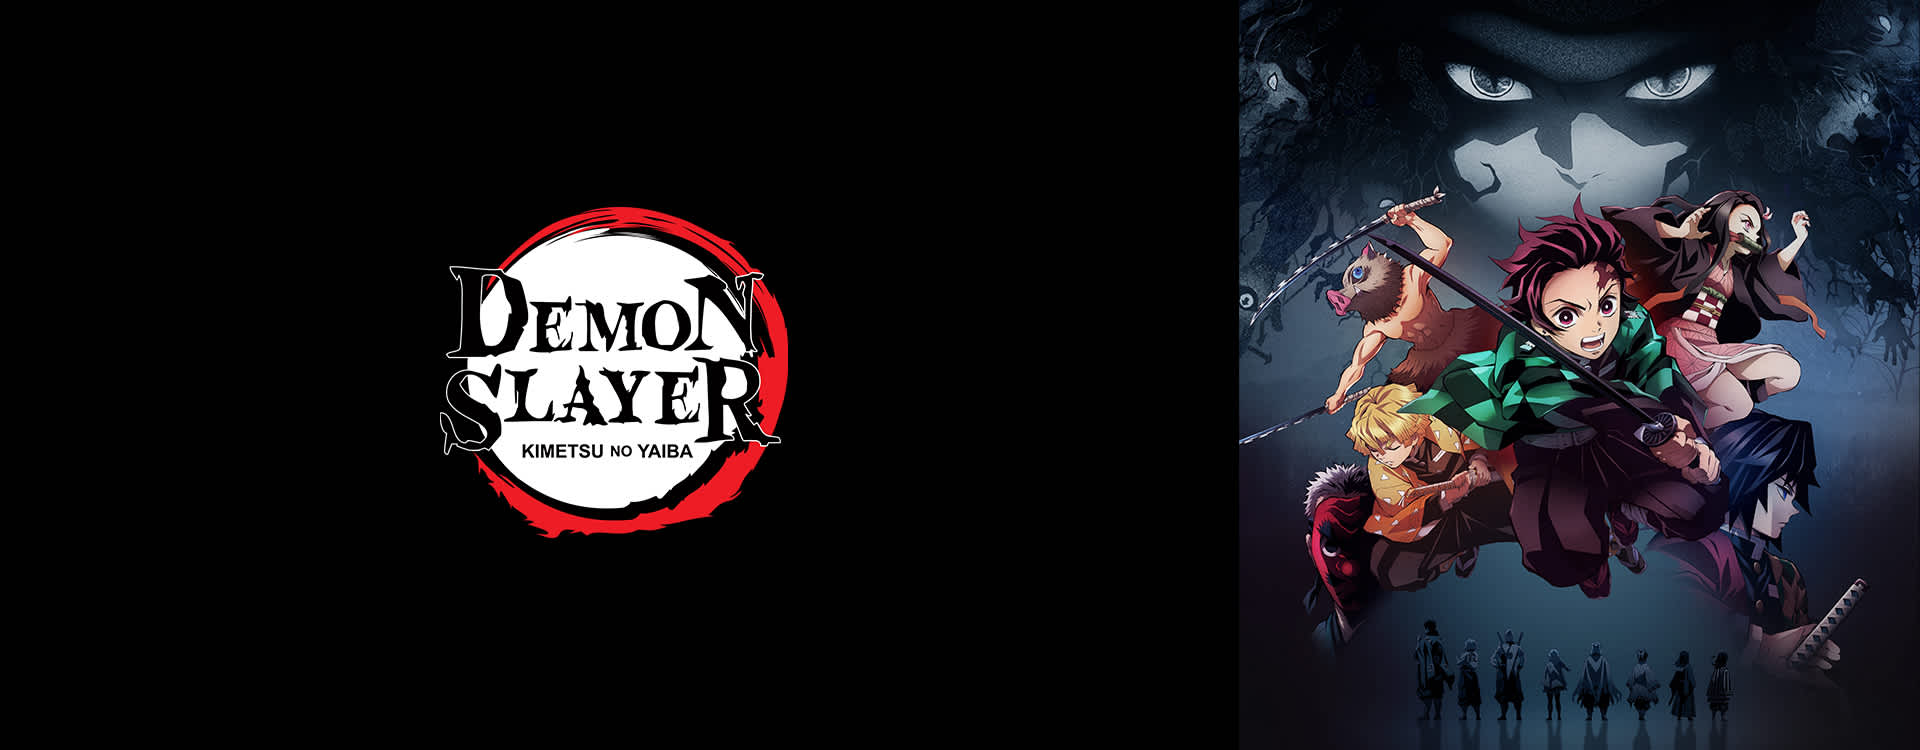 Demon Slayer: Kimetsu no Yaiba Sabito and Makomo - Watch on Crunchyroll